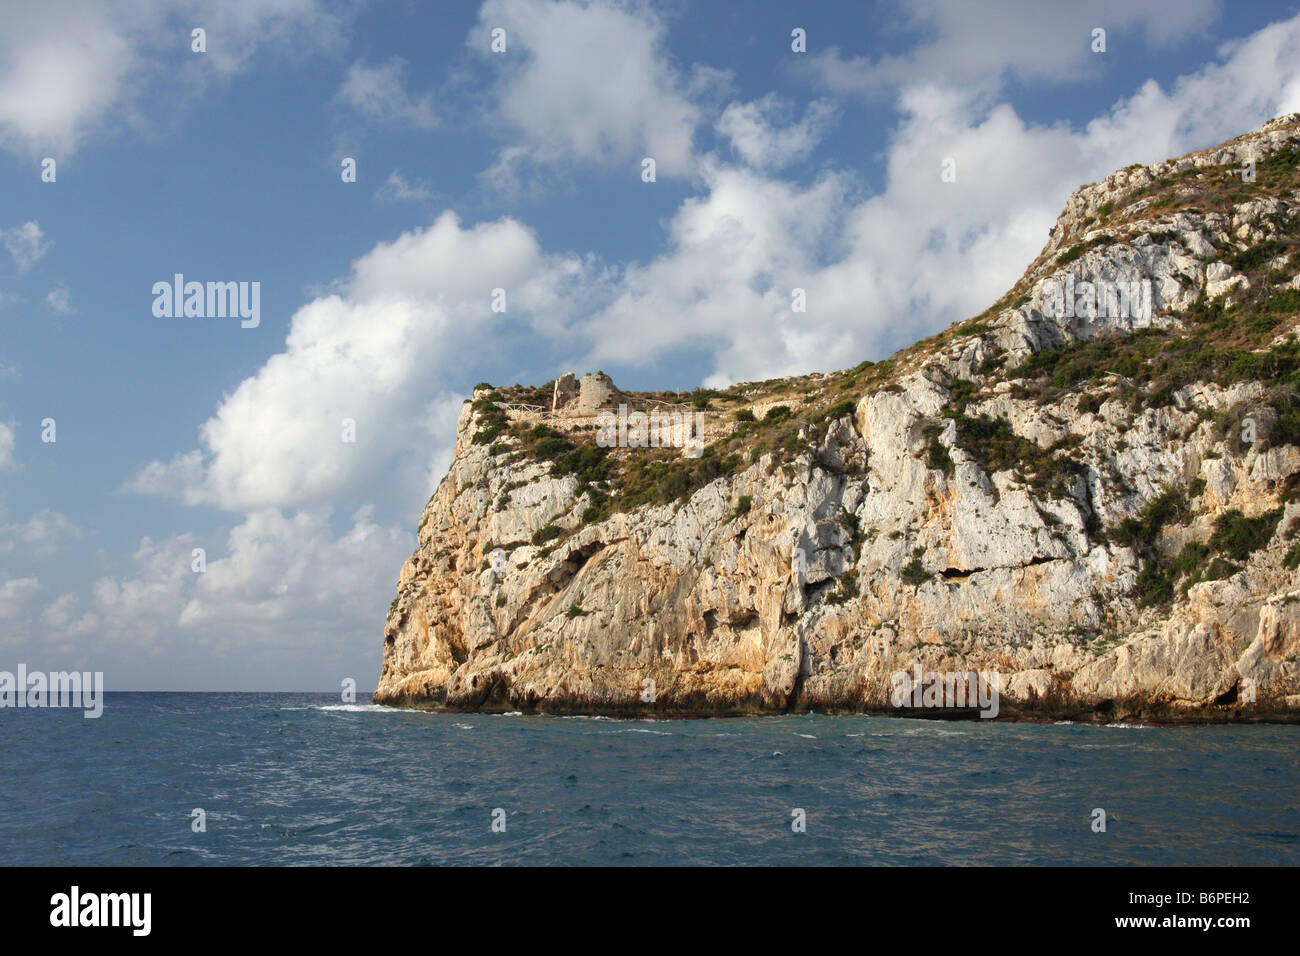 View of Morro Castel from a ship close to the Isla del Descubridor, La Granadella, Jávea, Alicante, Spain Stock Photo